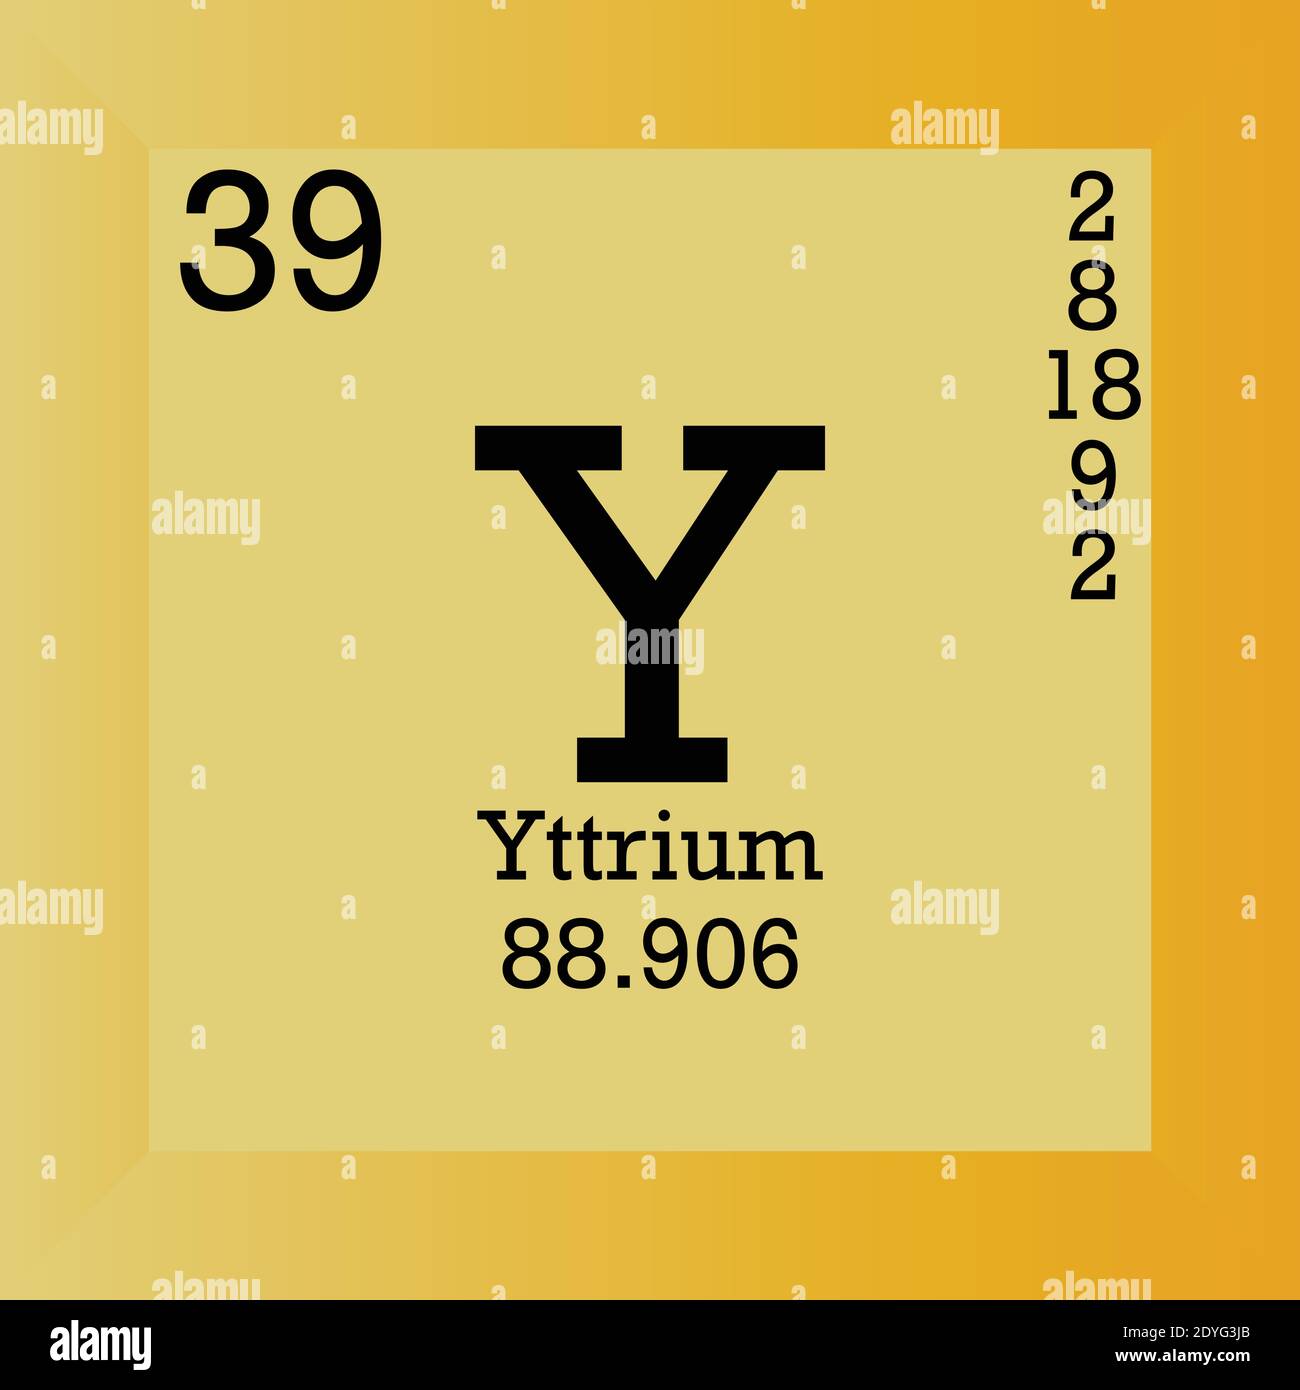 Y Yttrium Periodensystem für chemische Elemente. Einzelvektordarstellung, Elementsymbol mit molarer Masse, Ordnungszahl und Elektronenkonf. Stock Vektor